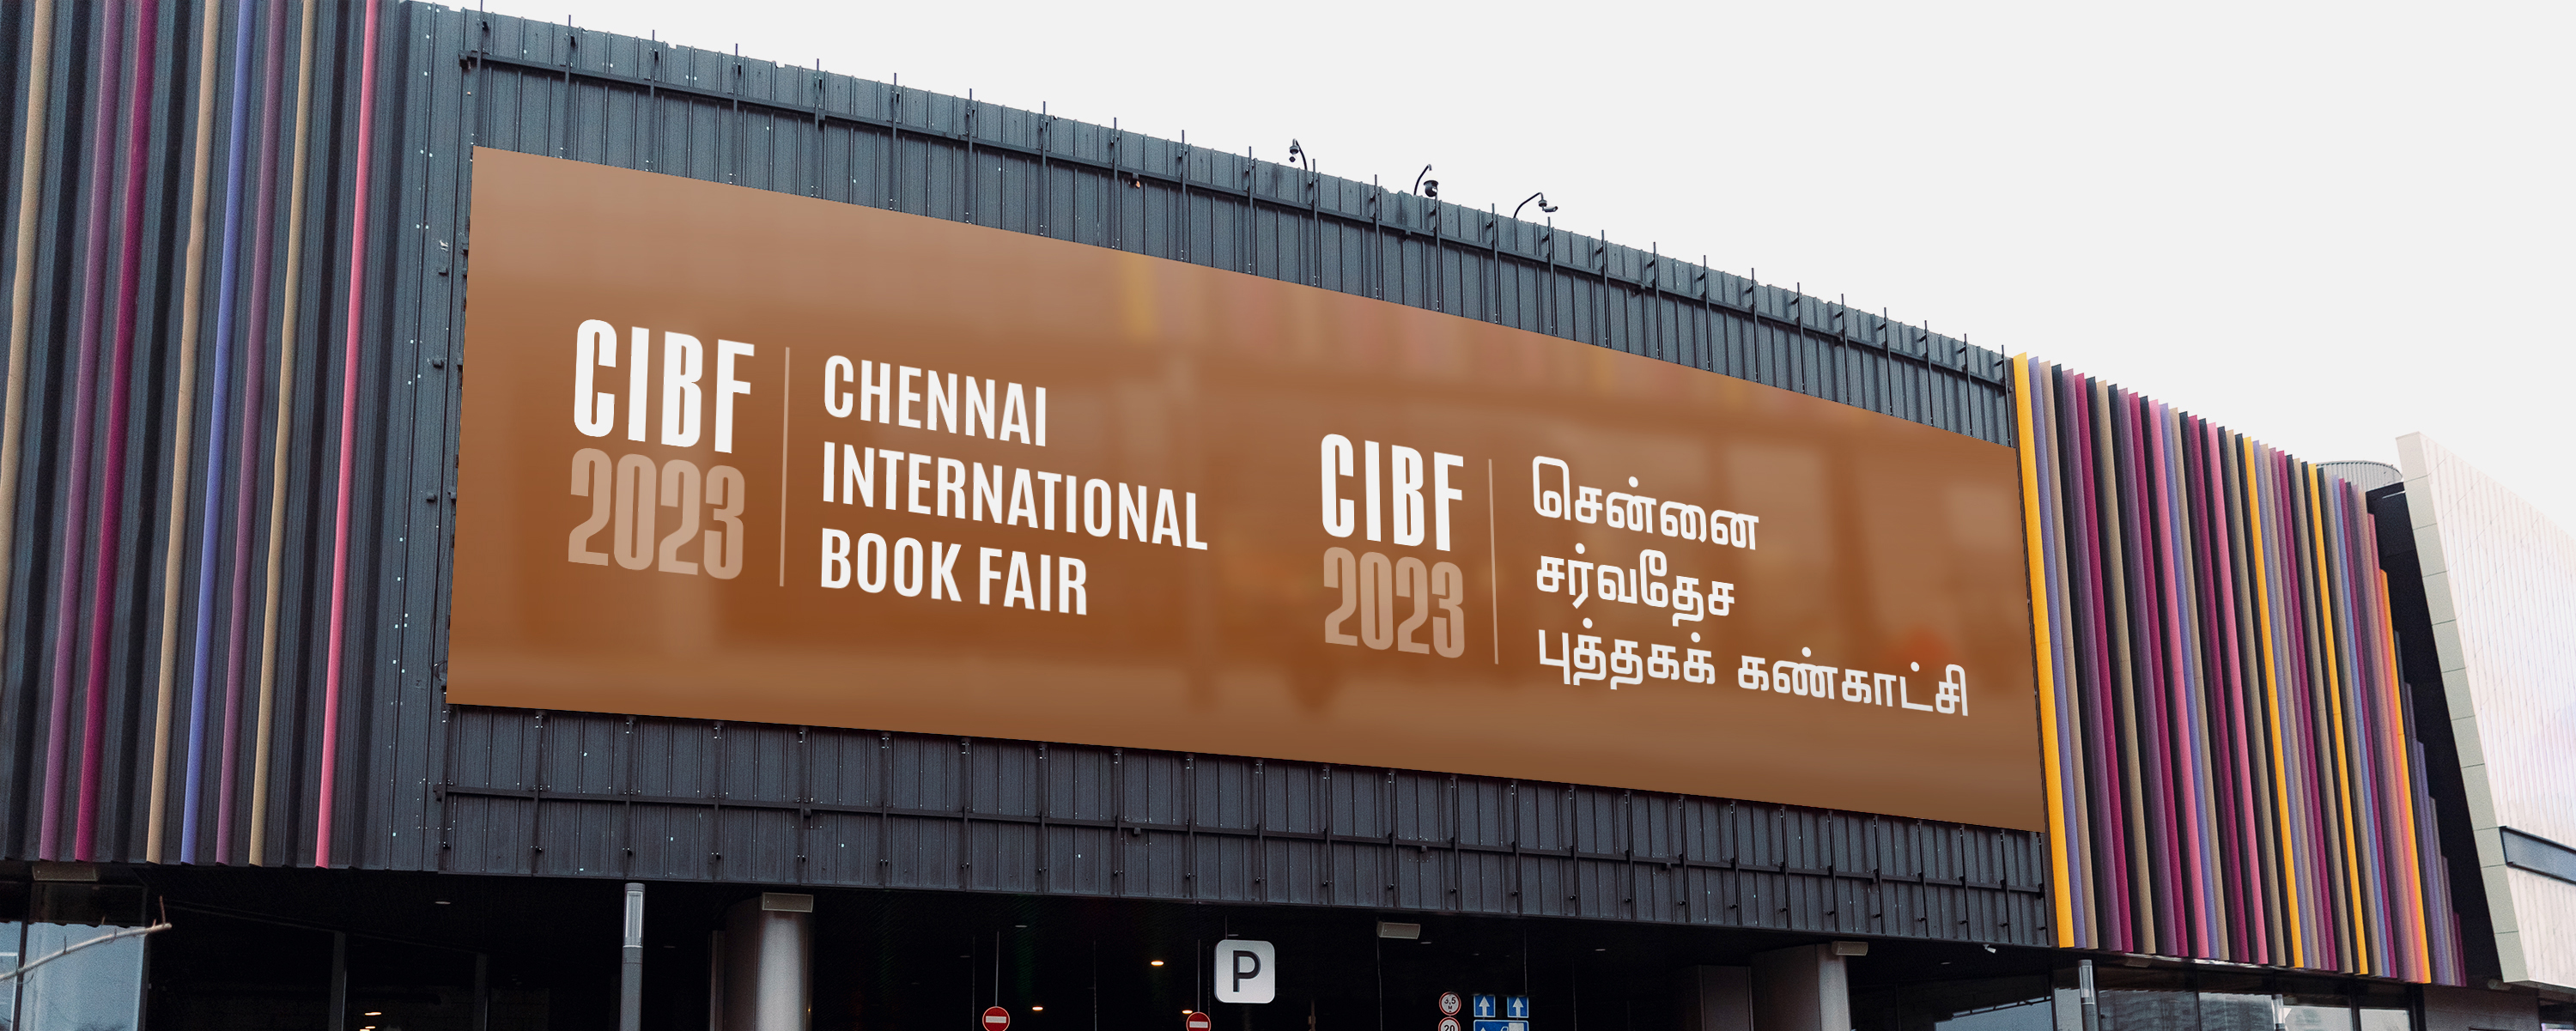 chennai international book fair 2023.jpg